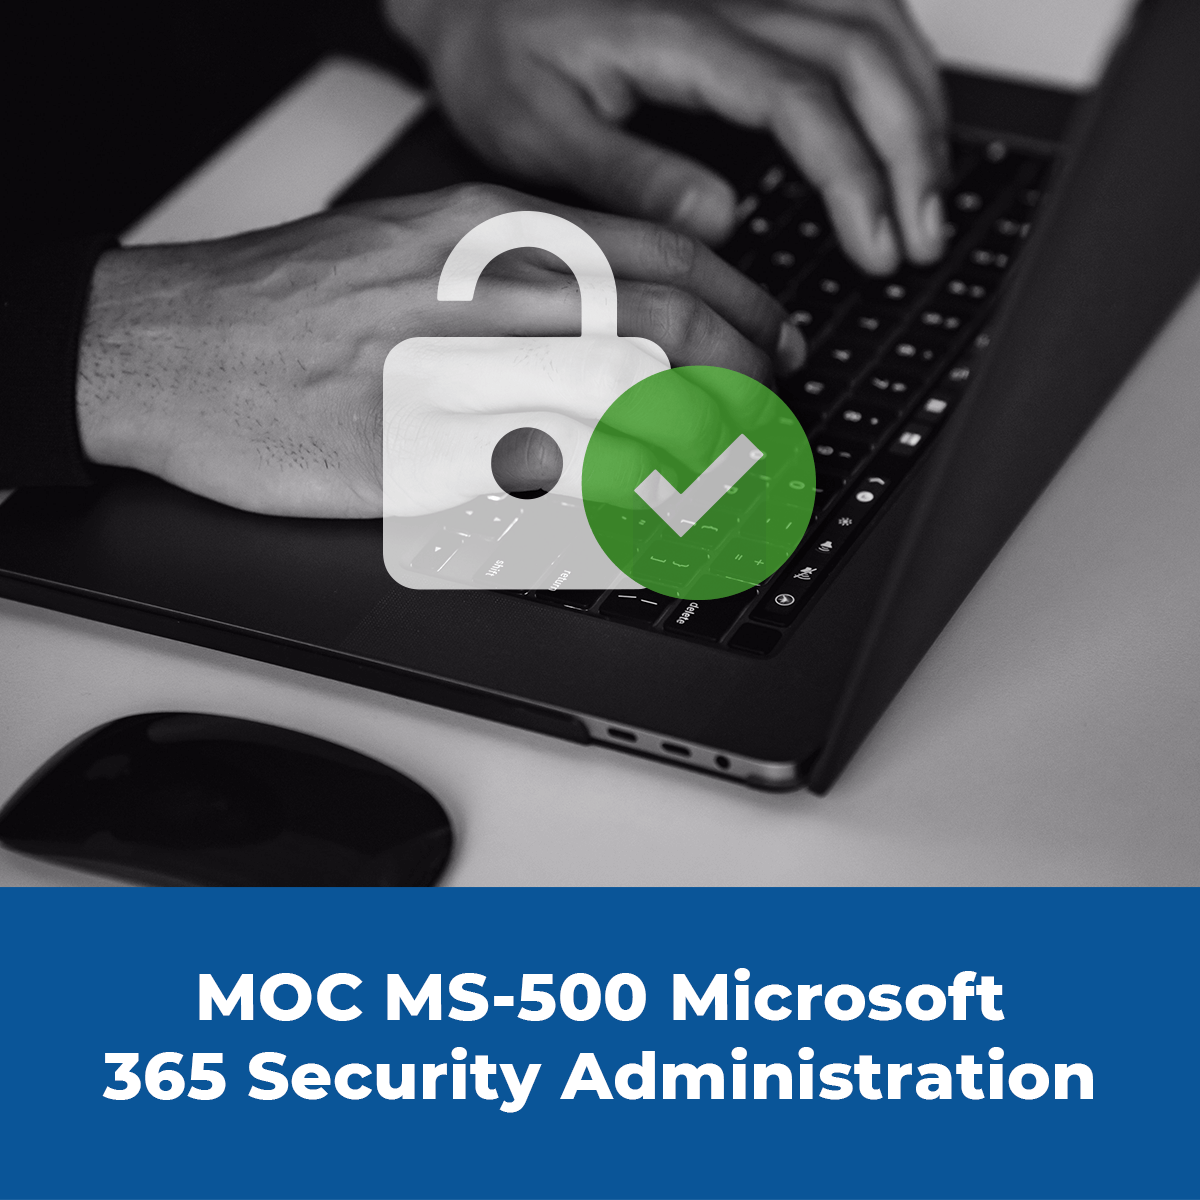 MOC-MS-500-Microsoft - immagine evento